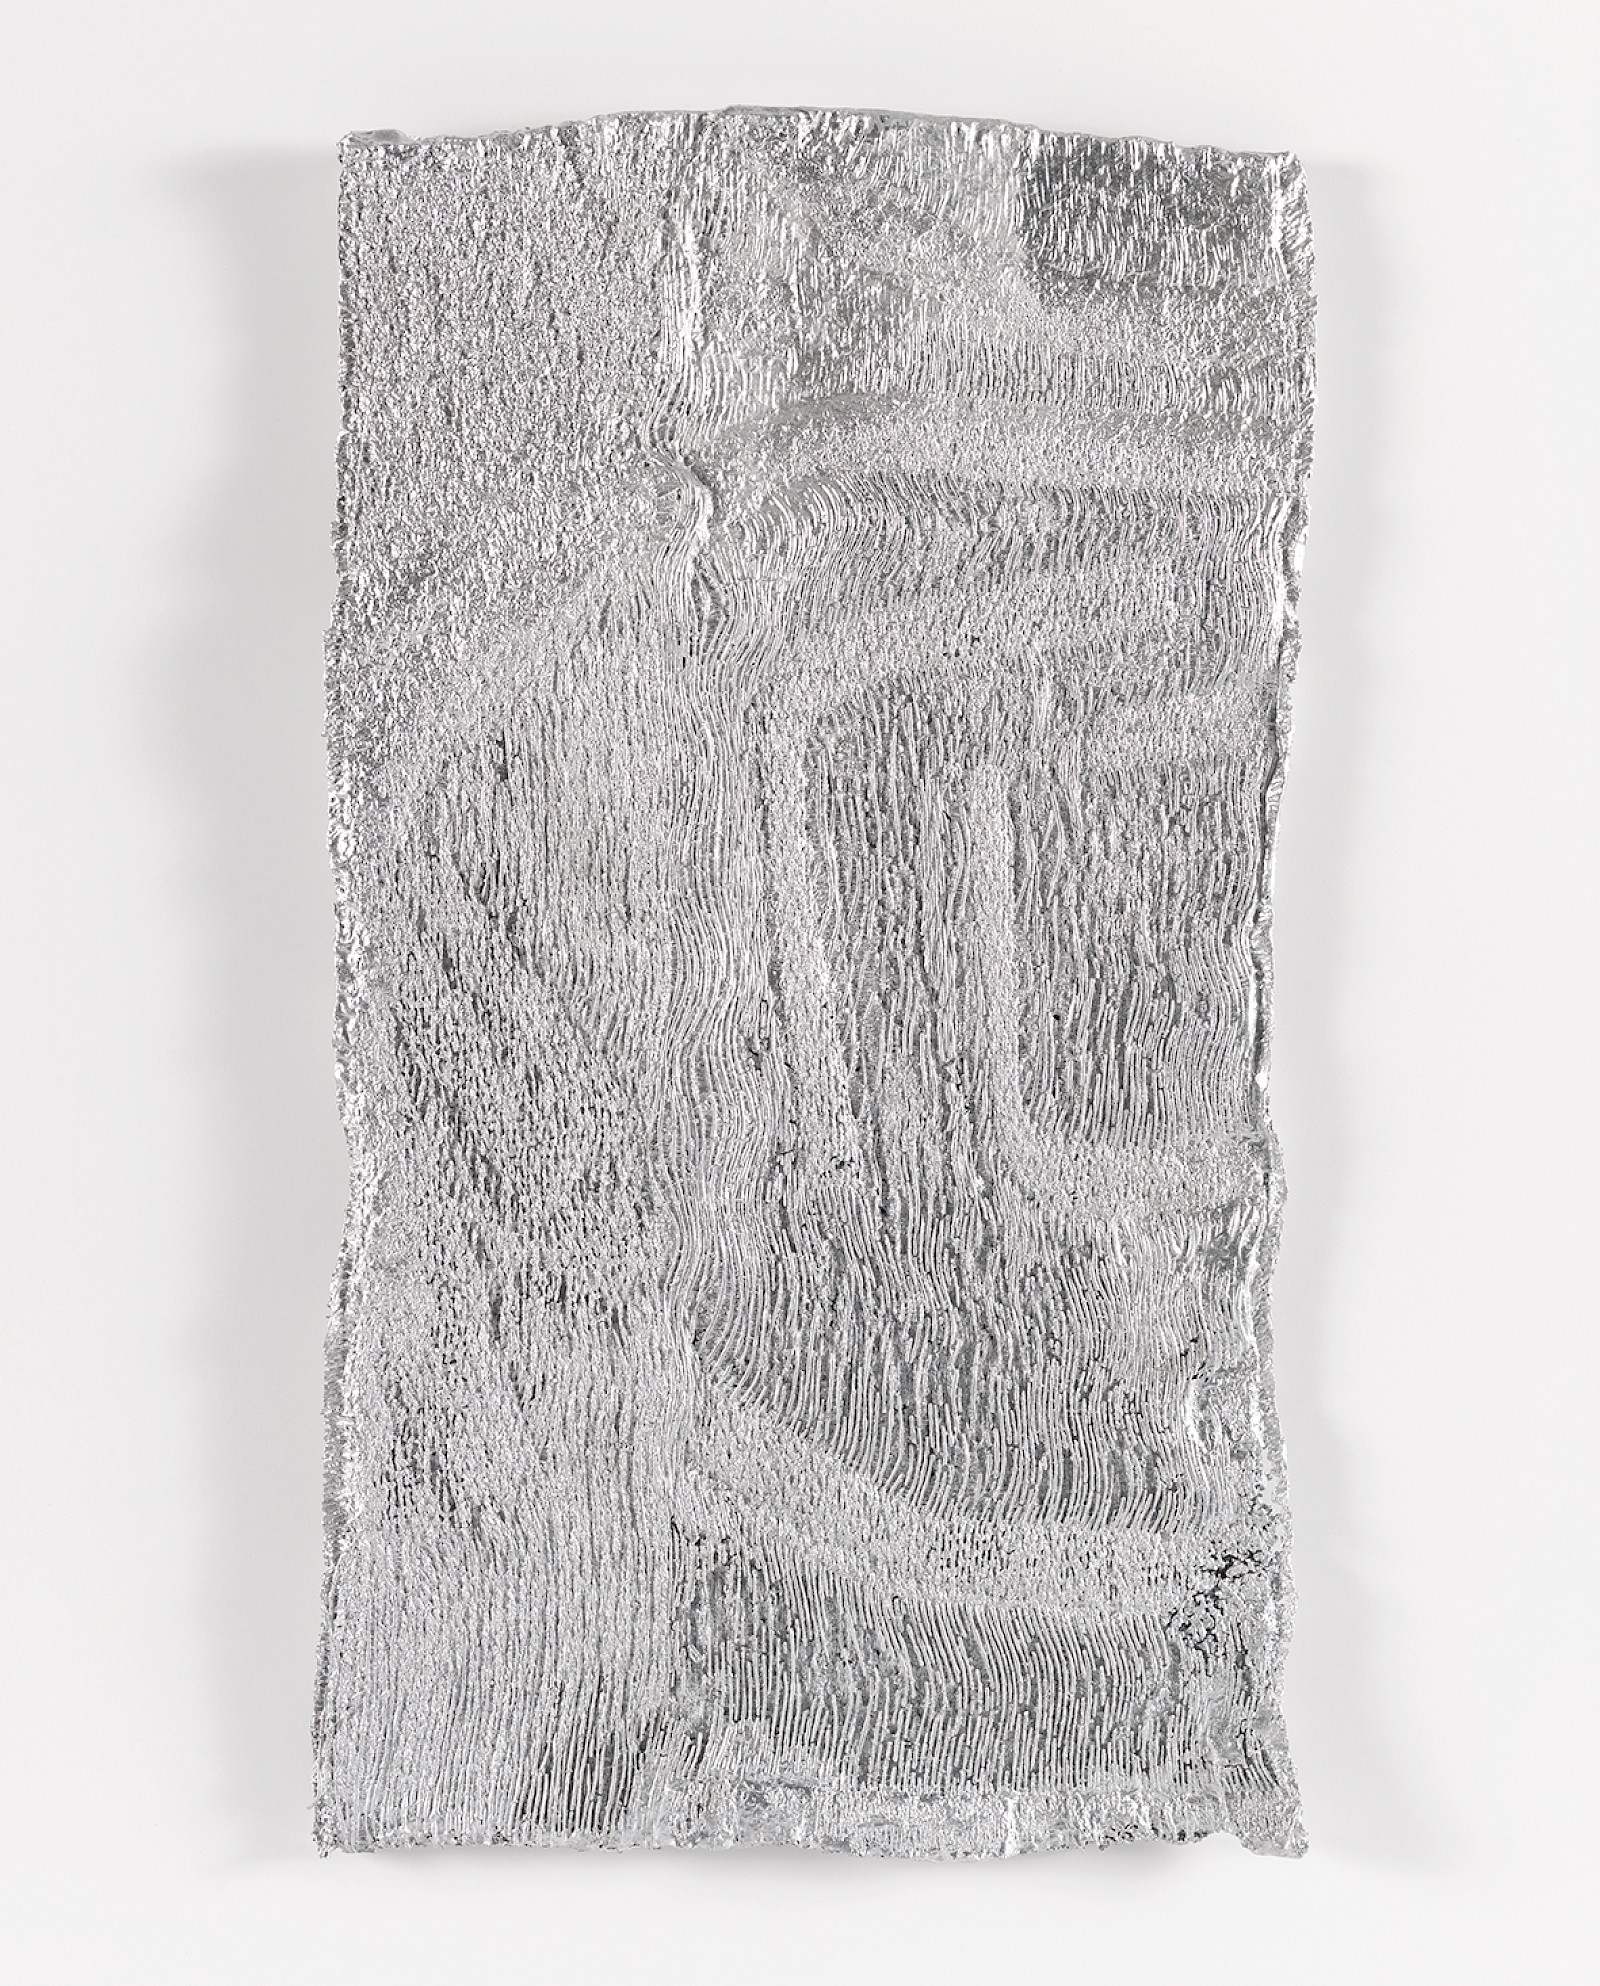 Image - Sur le fil, aluminium, Size: 21 x 37 x 0.5 cm